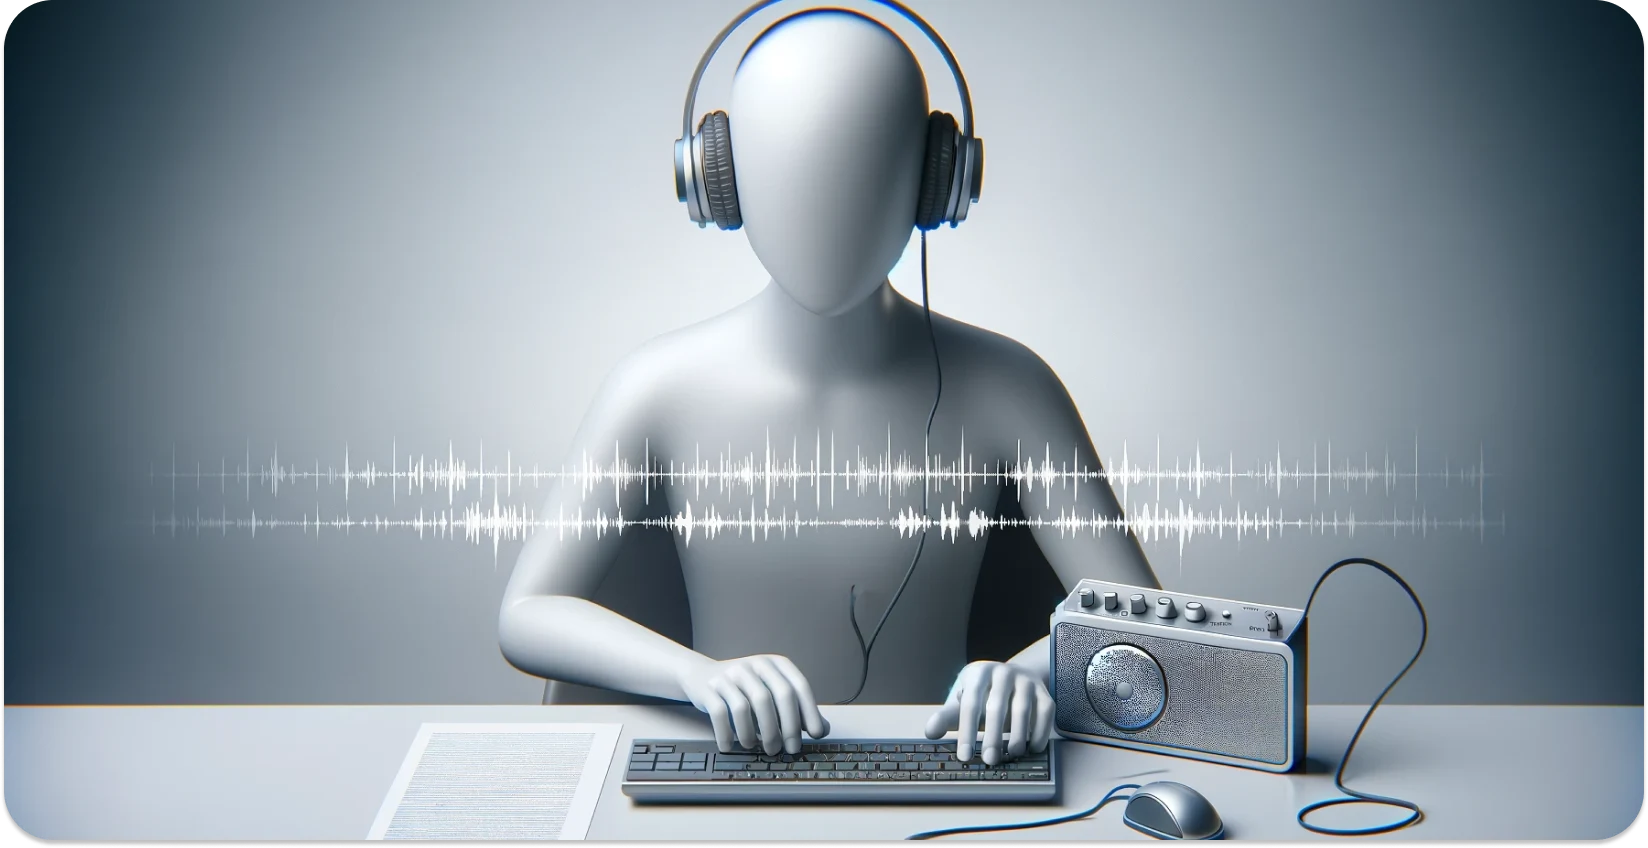 Representação abstrata de uma pessoa transcrevendo áudio para texto, com forma de onda, teclado e rádio.